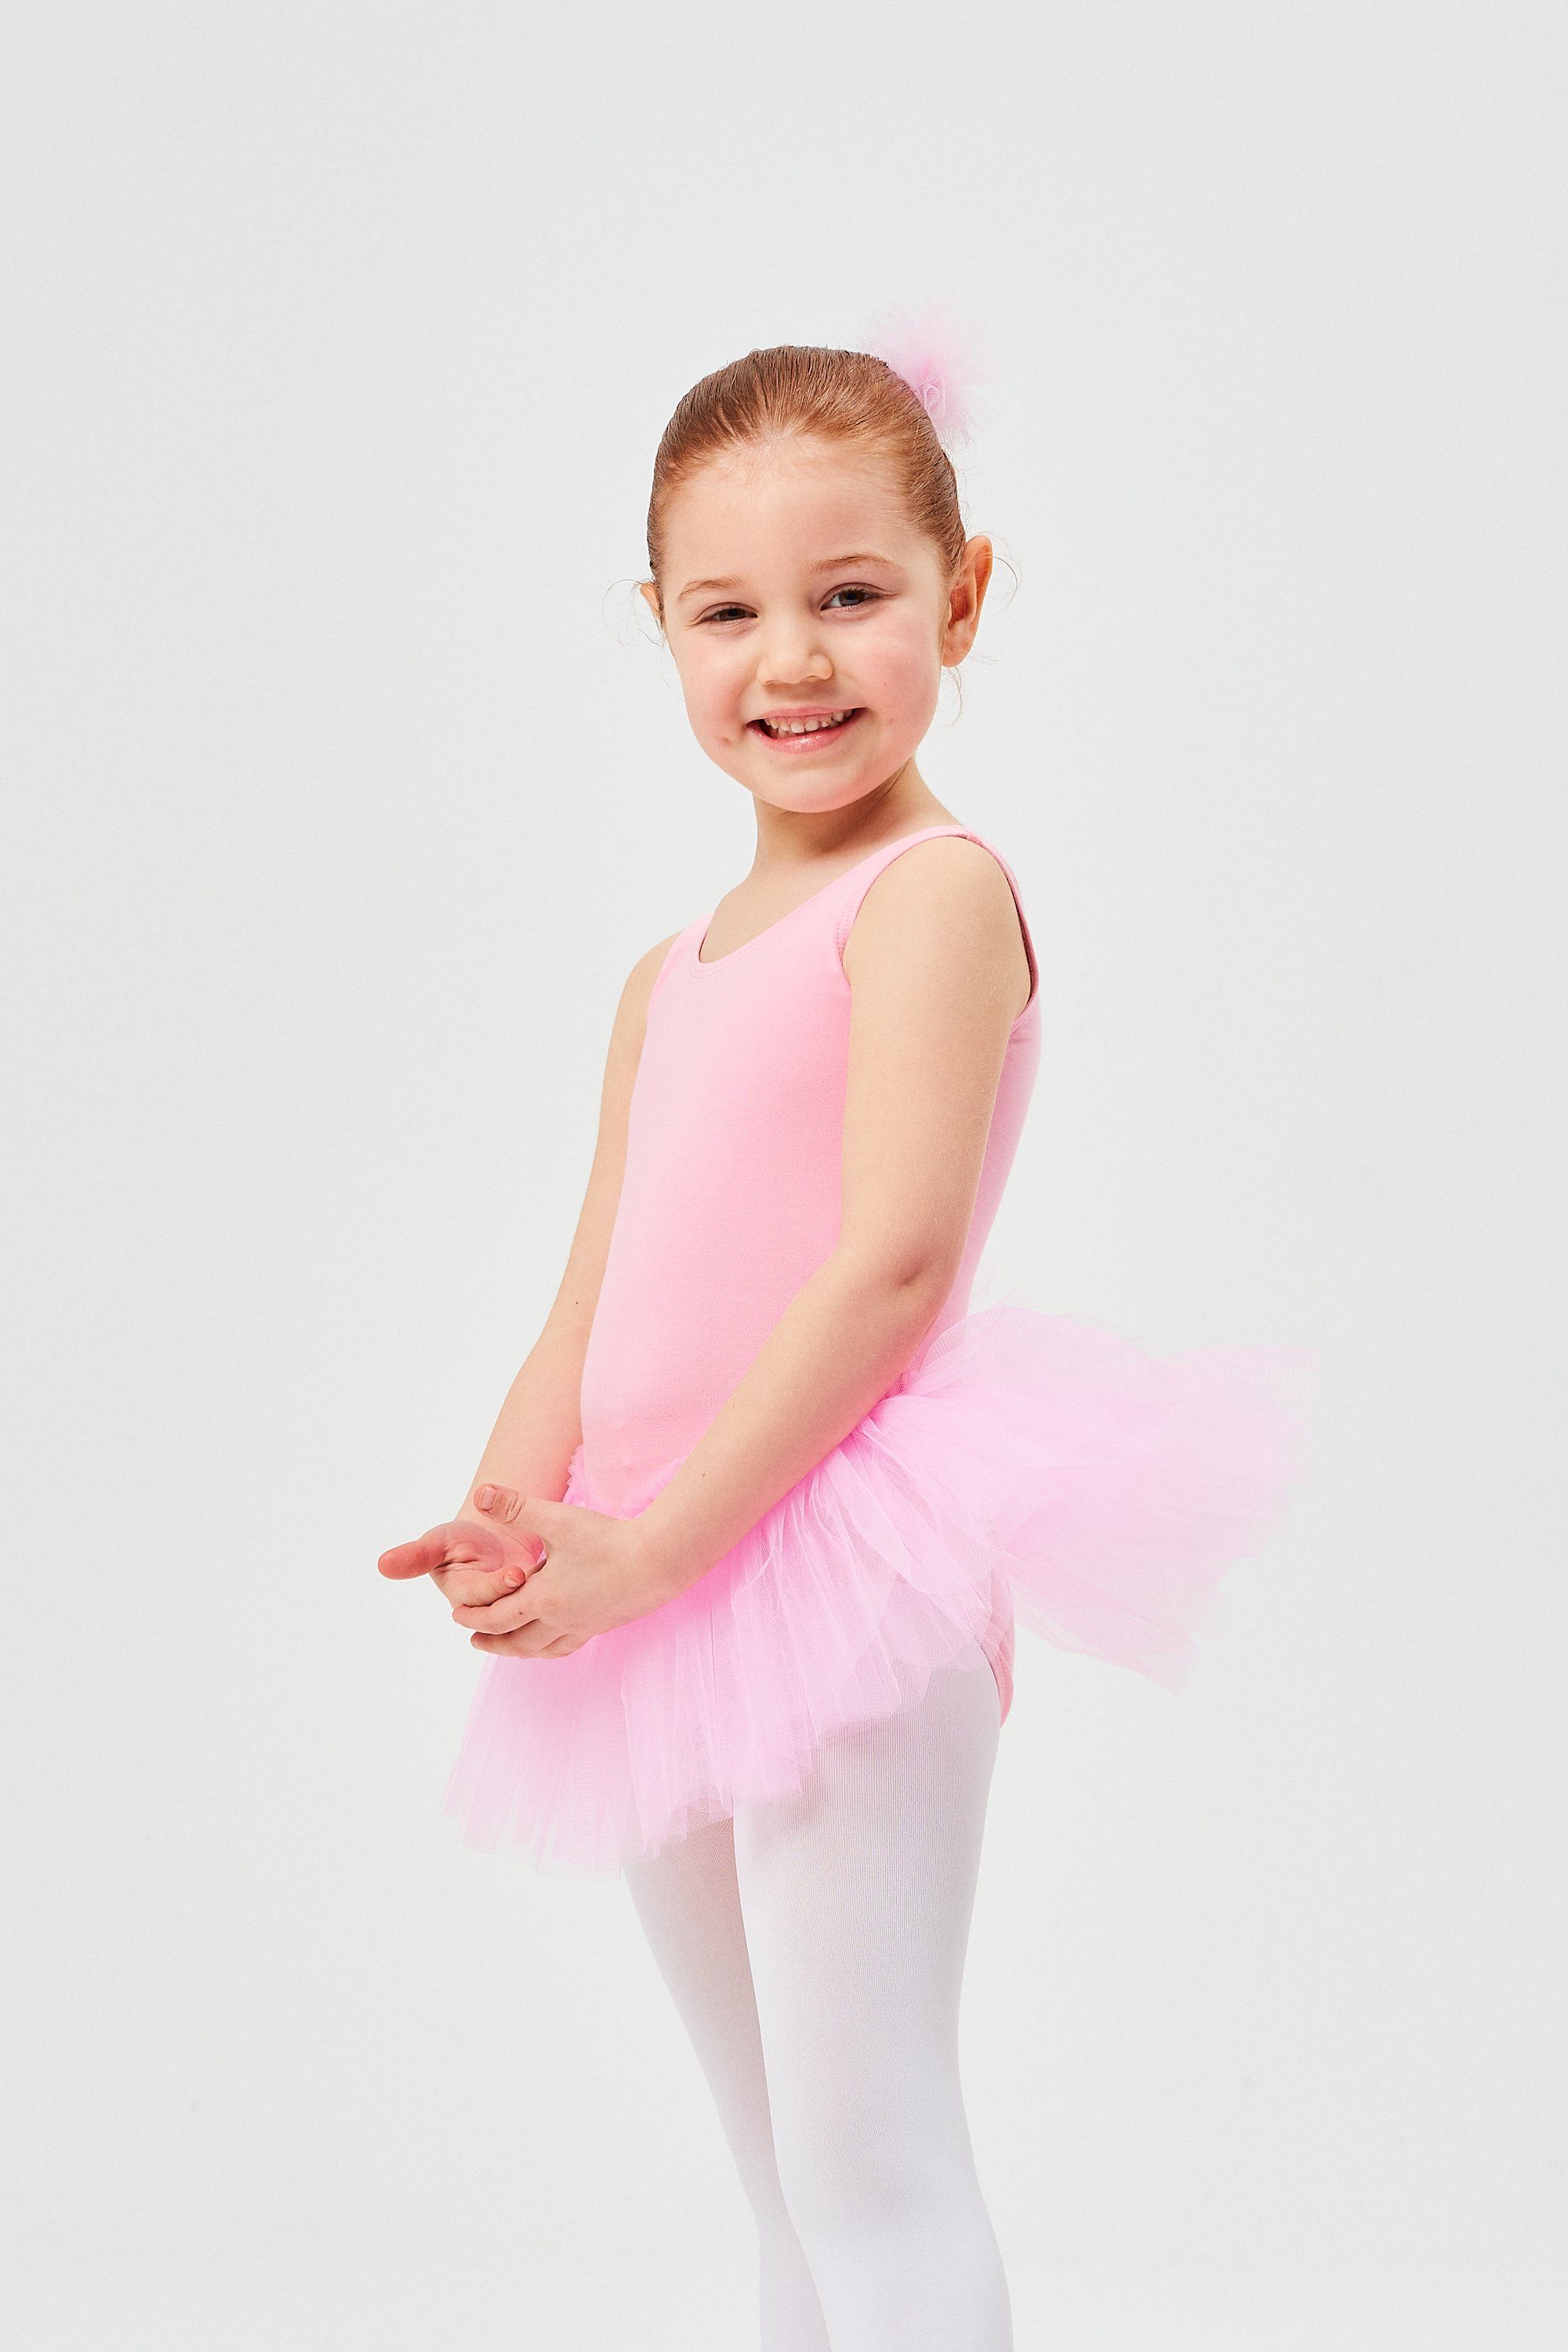 Tüllkleid Baumwolle, rosa Ballett Anabelle Ballettkleid tanzmuster Tutu weicher für Mädchen ärmellos aus